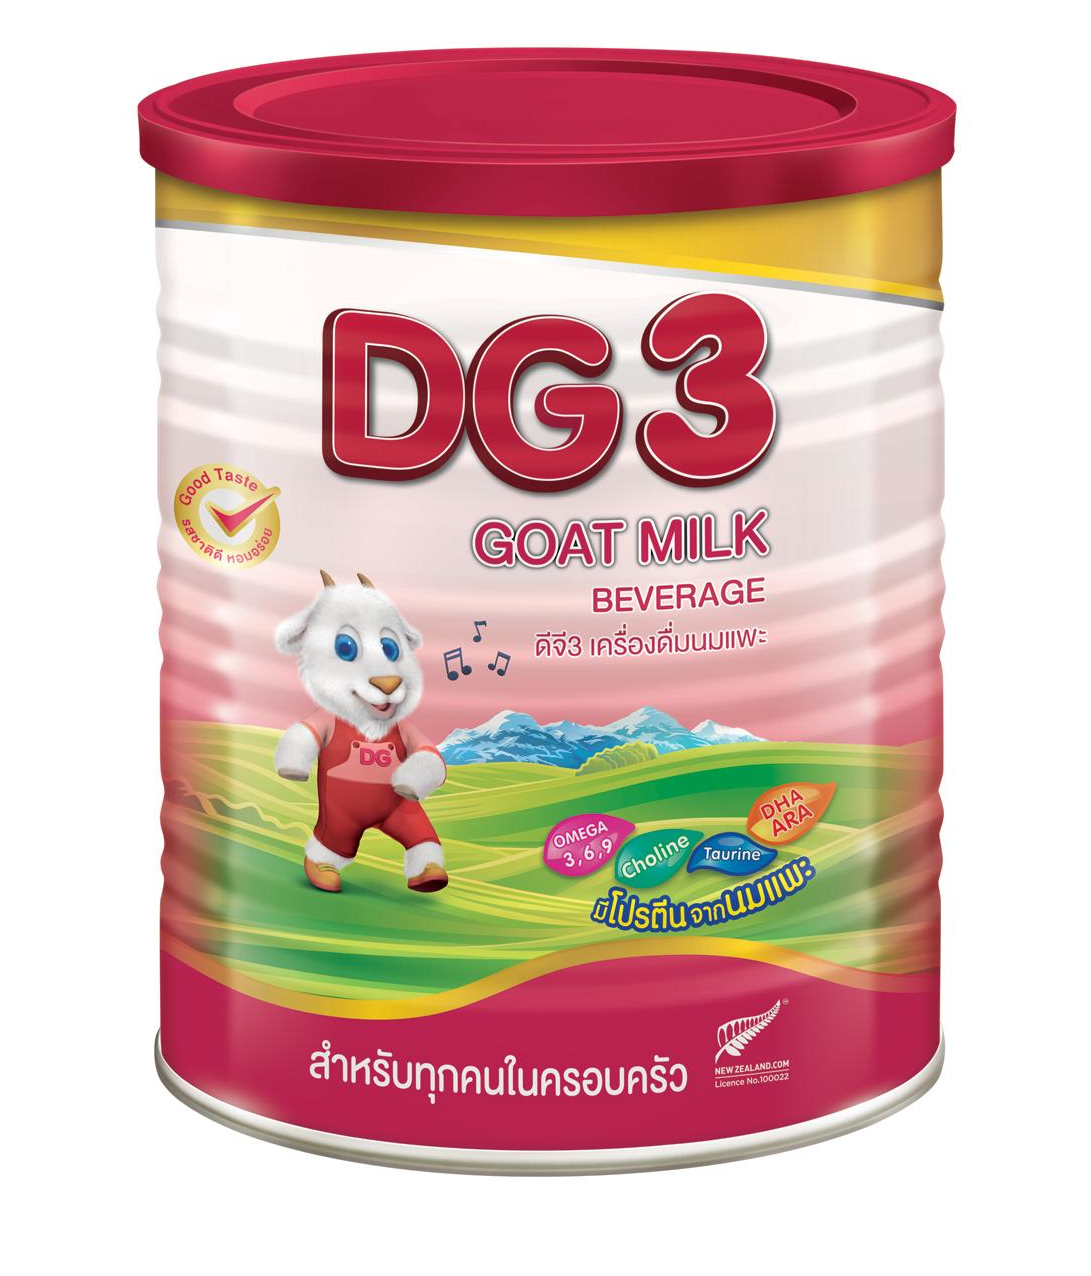 คูปองส่งฟรีDG3 นมแพะ ดีจี3 แอดวานซ์ ขนาด 400 กรัม สำหรับเด็ก 1 ปีขึ้นไป และทุกคนในครอบครัว